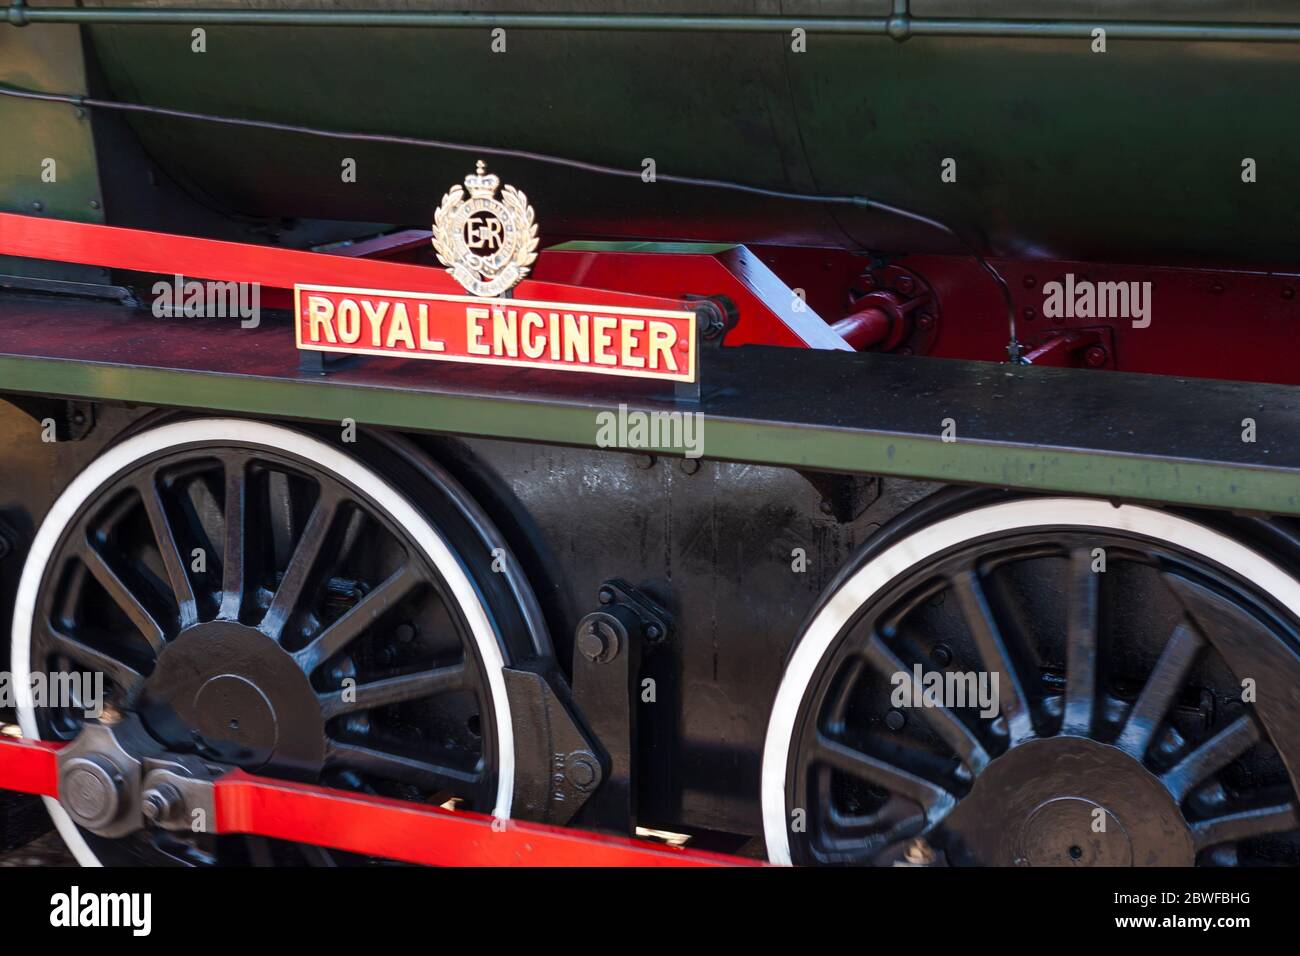 Primo piano delle ruote motrici e badge del nome della locomotiva Hunslet austerità WD198 "Royal Engineer", ferrovia a vapore dell'Isola di Wight, Isola di Wight, Regno Unito Foto Stock